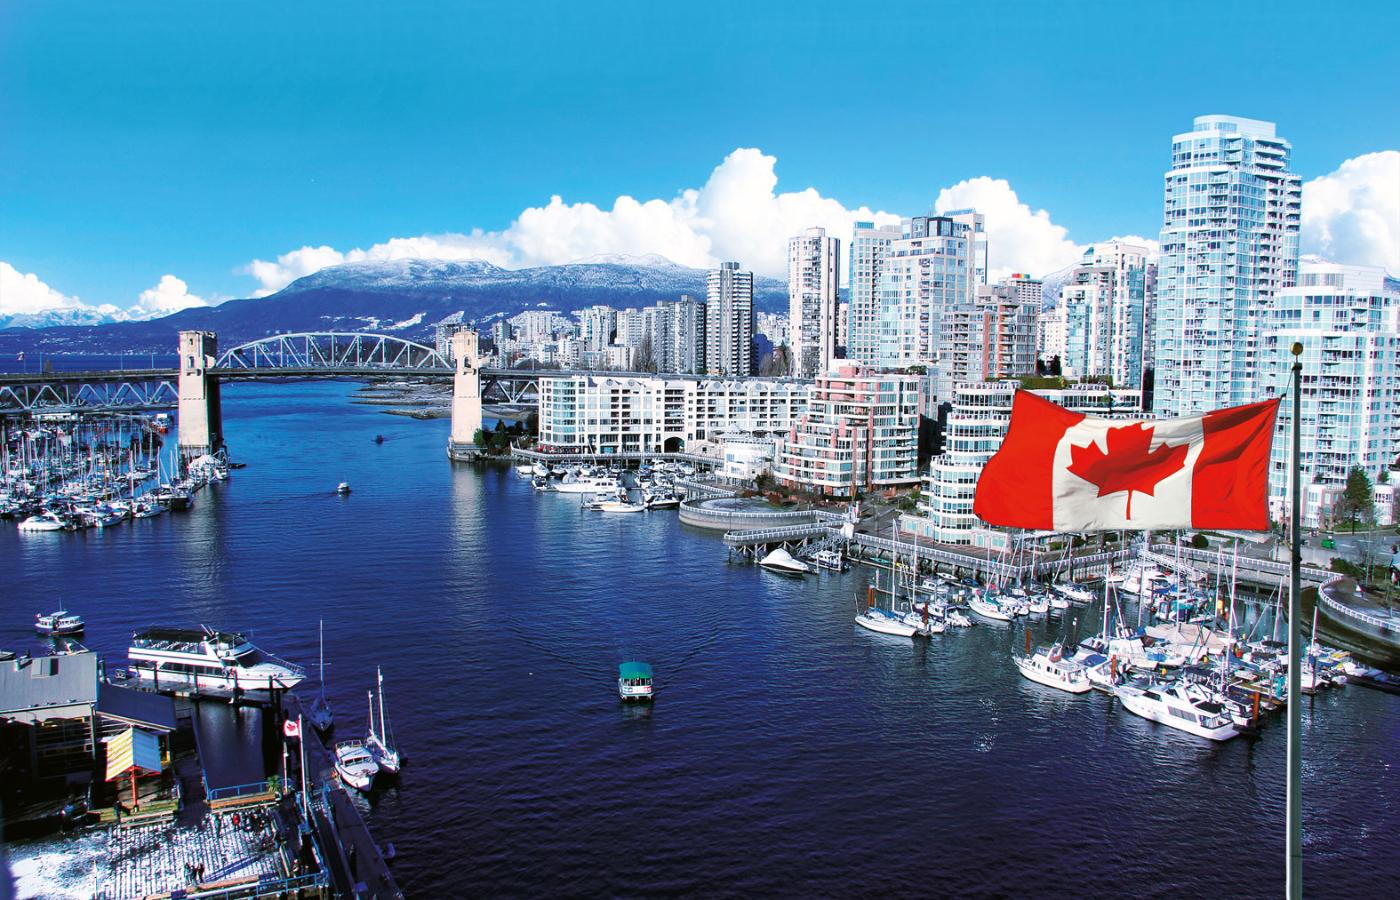 W Vancouver na zakup dobrego trzypokojowego mieszkania trzeba mieć co najmniej 1,5 mln dol. kan. (czyli blisko 5 mln zł).